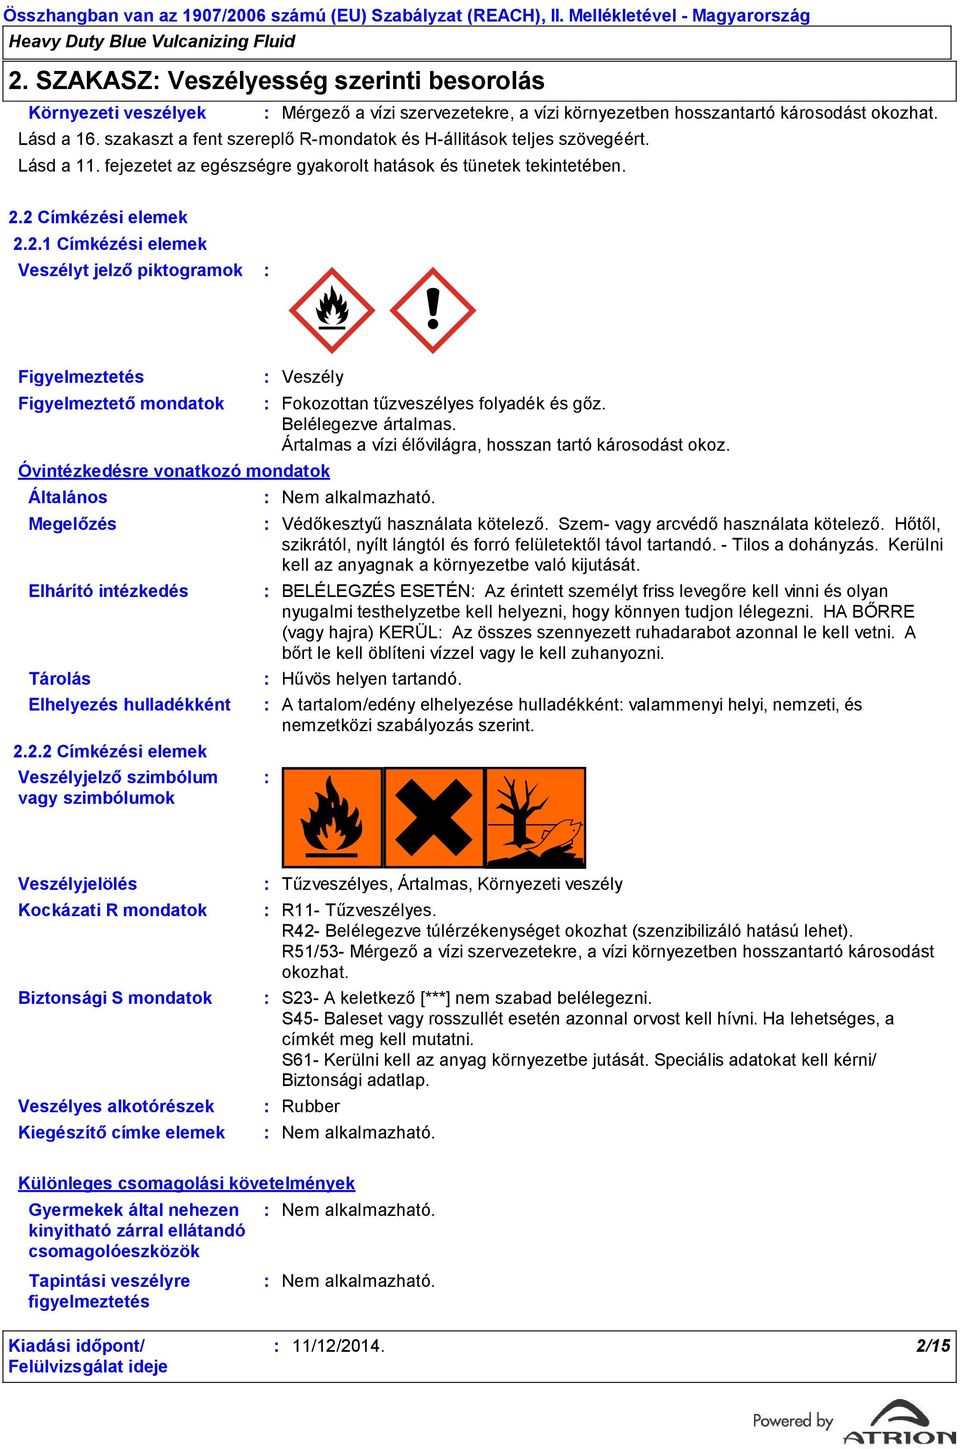 2 Címkézési elemek 2.2.1 Címkézési elemek Veszélyt jelző piktogramok Figyelmeztetés Figyelmeztető mondatok Óvintézkedésre vonatkozó mondatok Általános Megelőzés Elhárító intézkedés Tárolás Elhelyezés hulladékként 2.